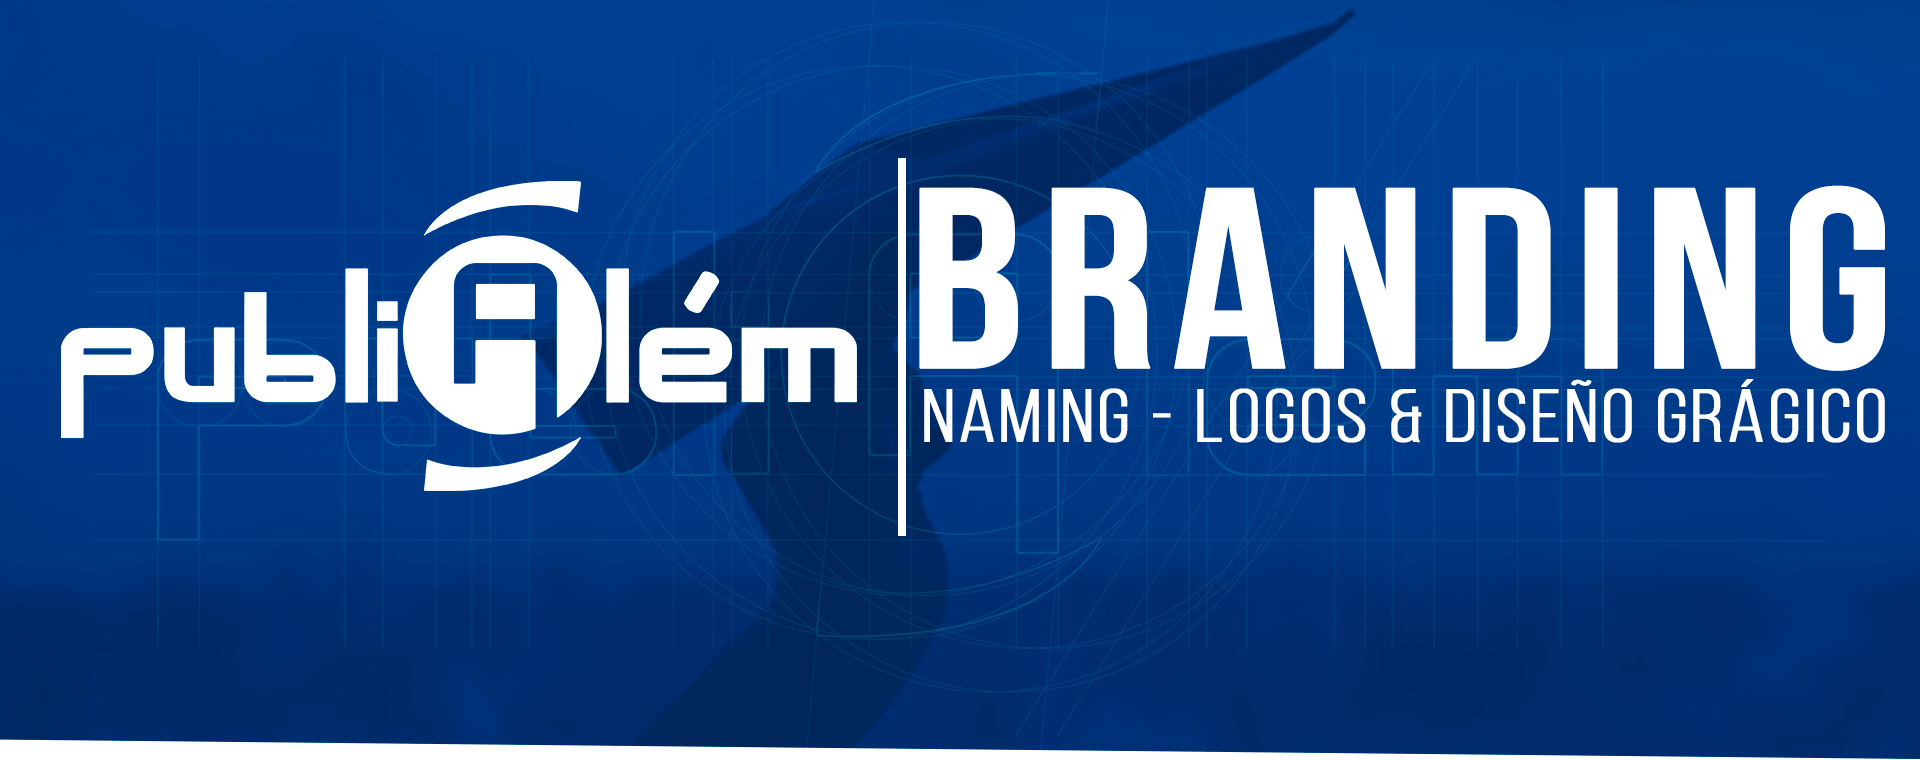 Diseño de logos y registro de marcas en df - PubliAlém | Agencia de publicidad en CDMX 